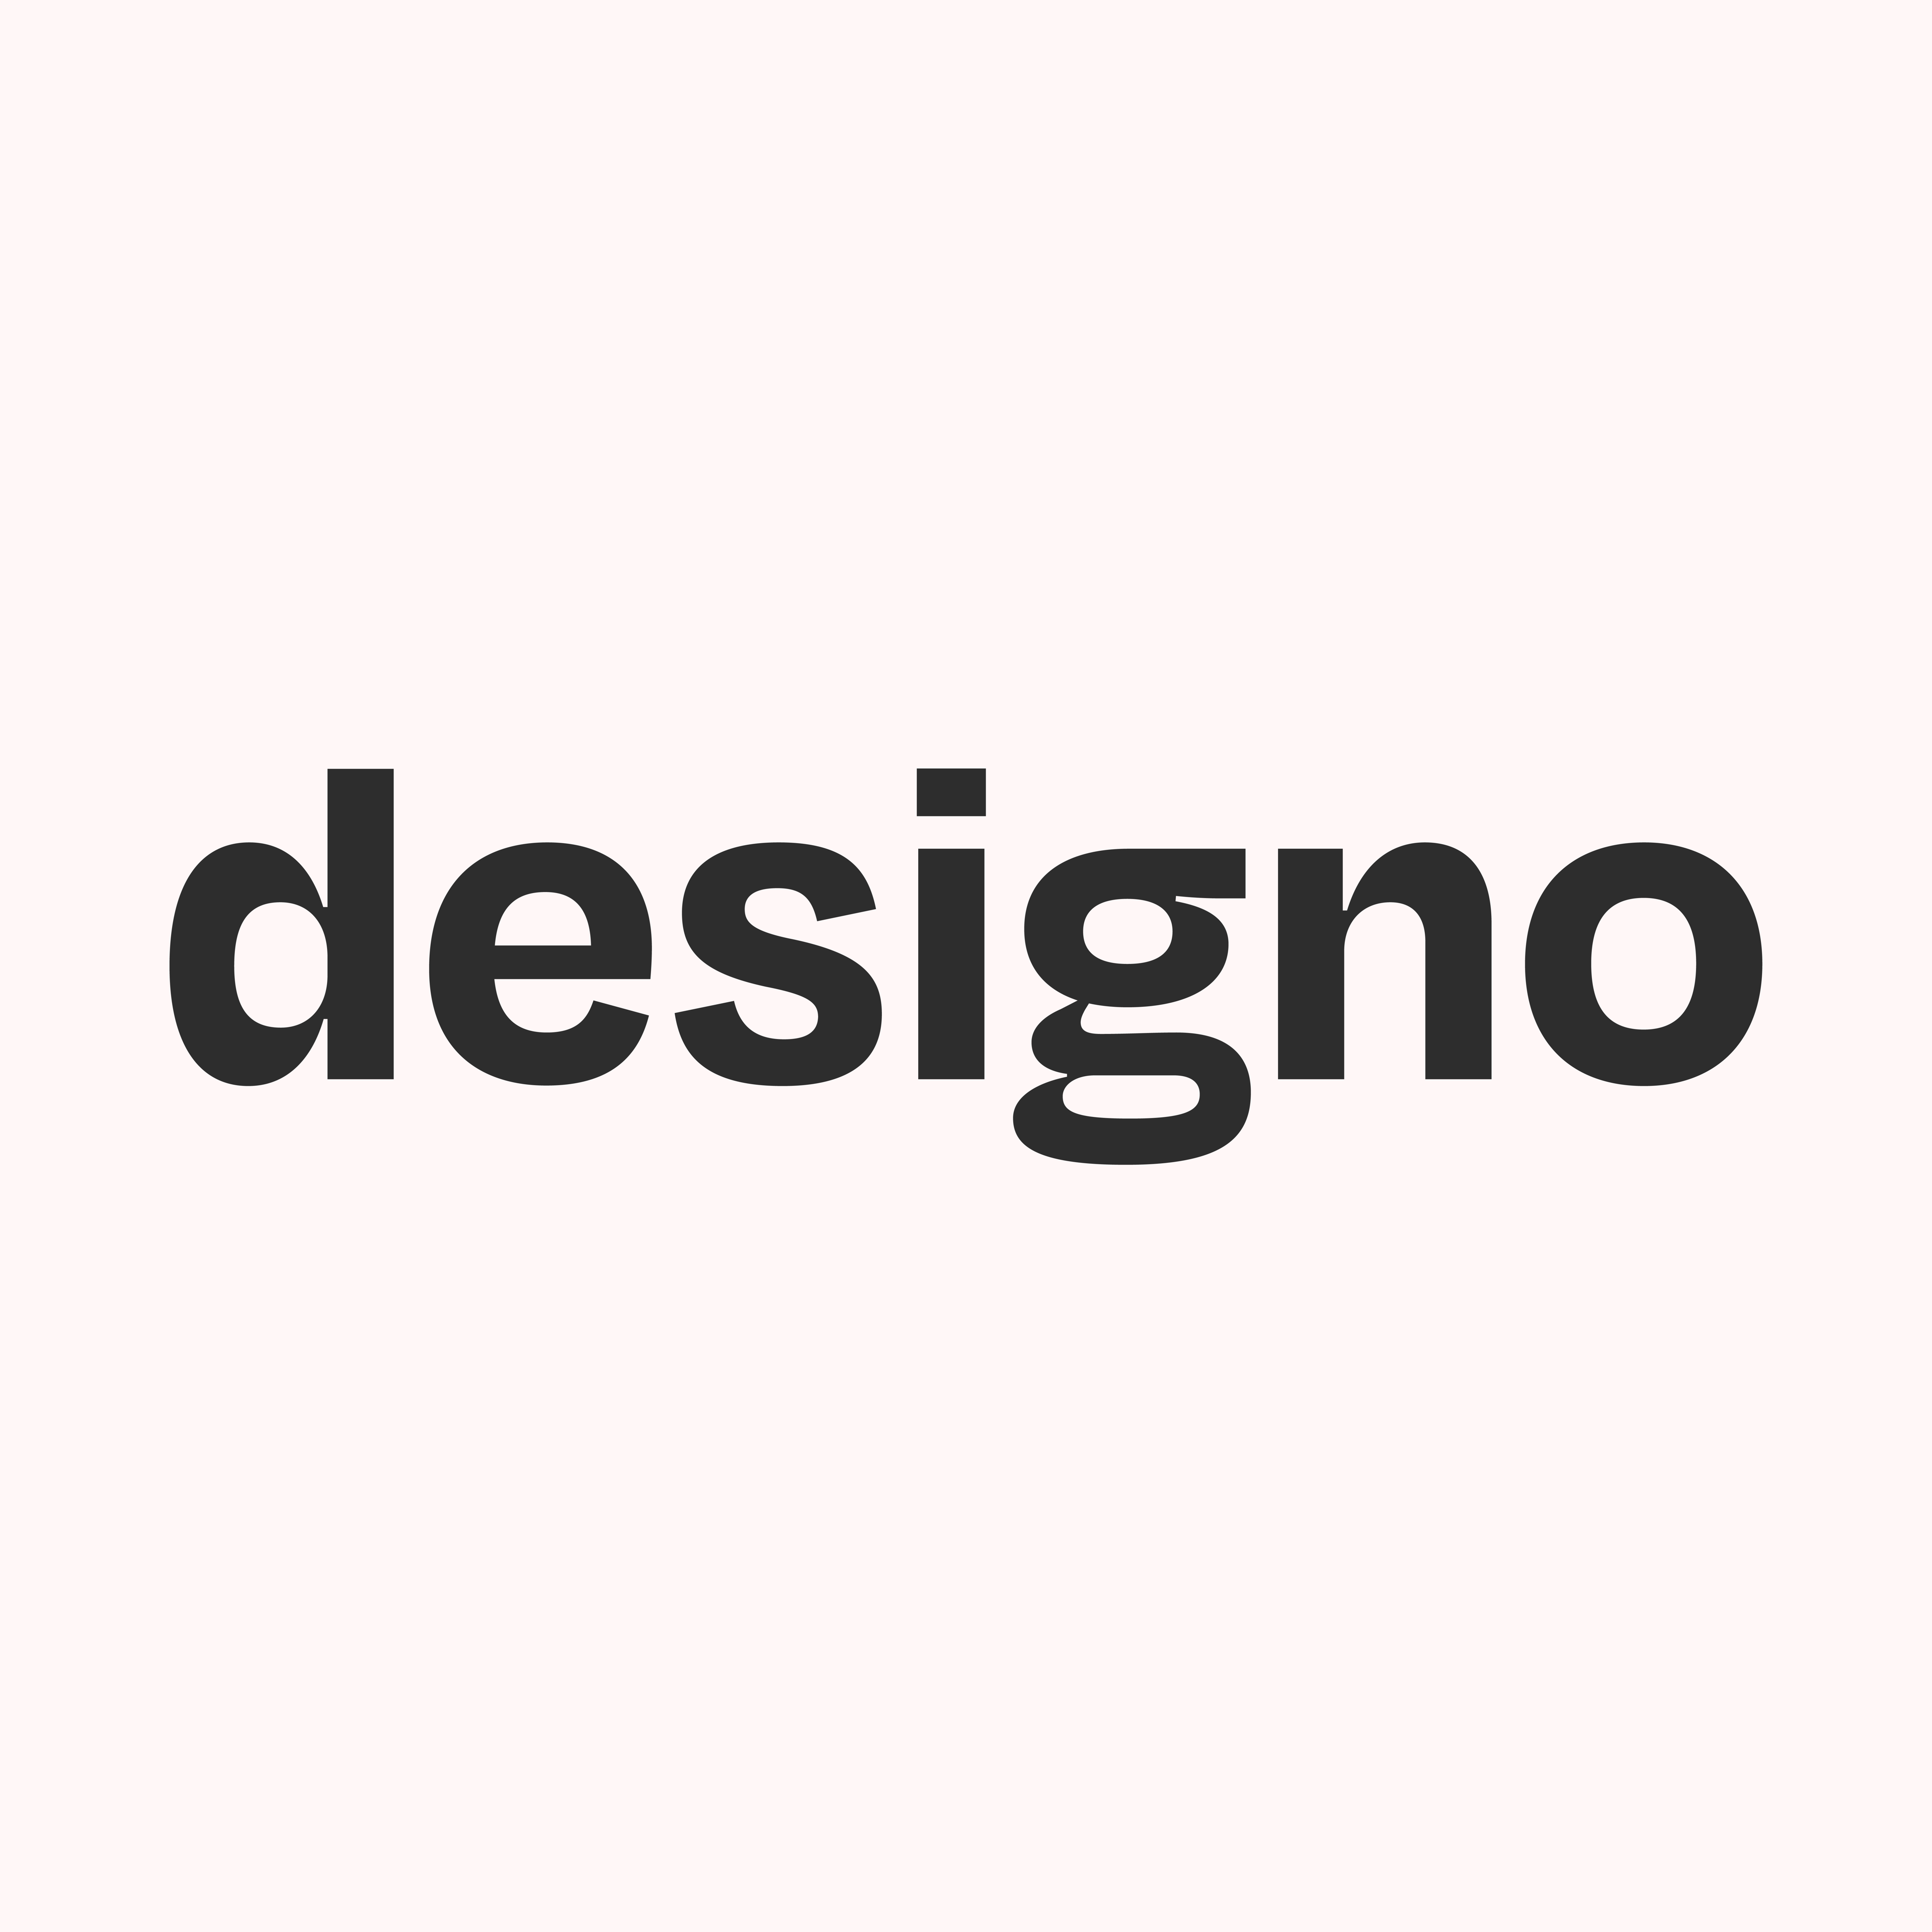 Designoのプロフィール画像